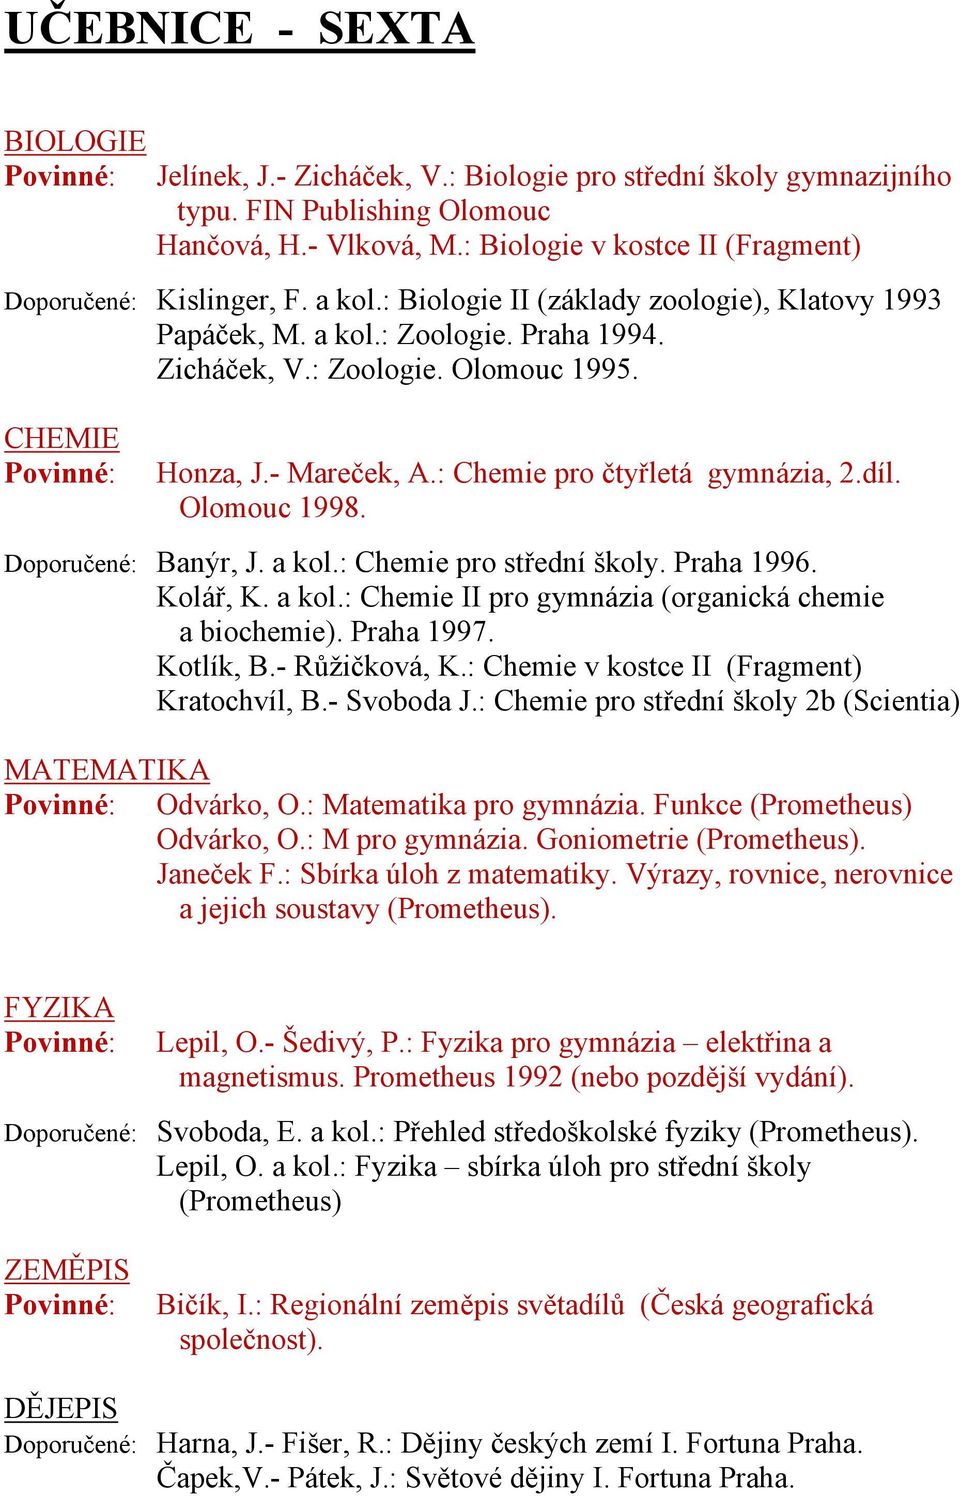 CHEMIE Honza, J.- Mareček, A.: Chemie pro čtyřletá gymnázia, 2.díl. Olomouc 1998. Doporučené: Banýr, J. a kol.: Chemie pro střední školy. Praha 1996. Kolář, K. a kol.: Chemie II pro gymnázia (organická chemie a biochemie).